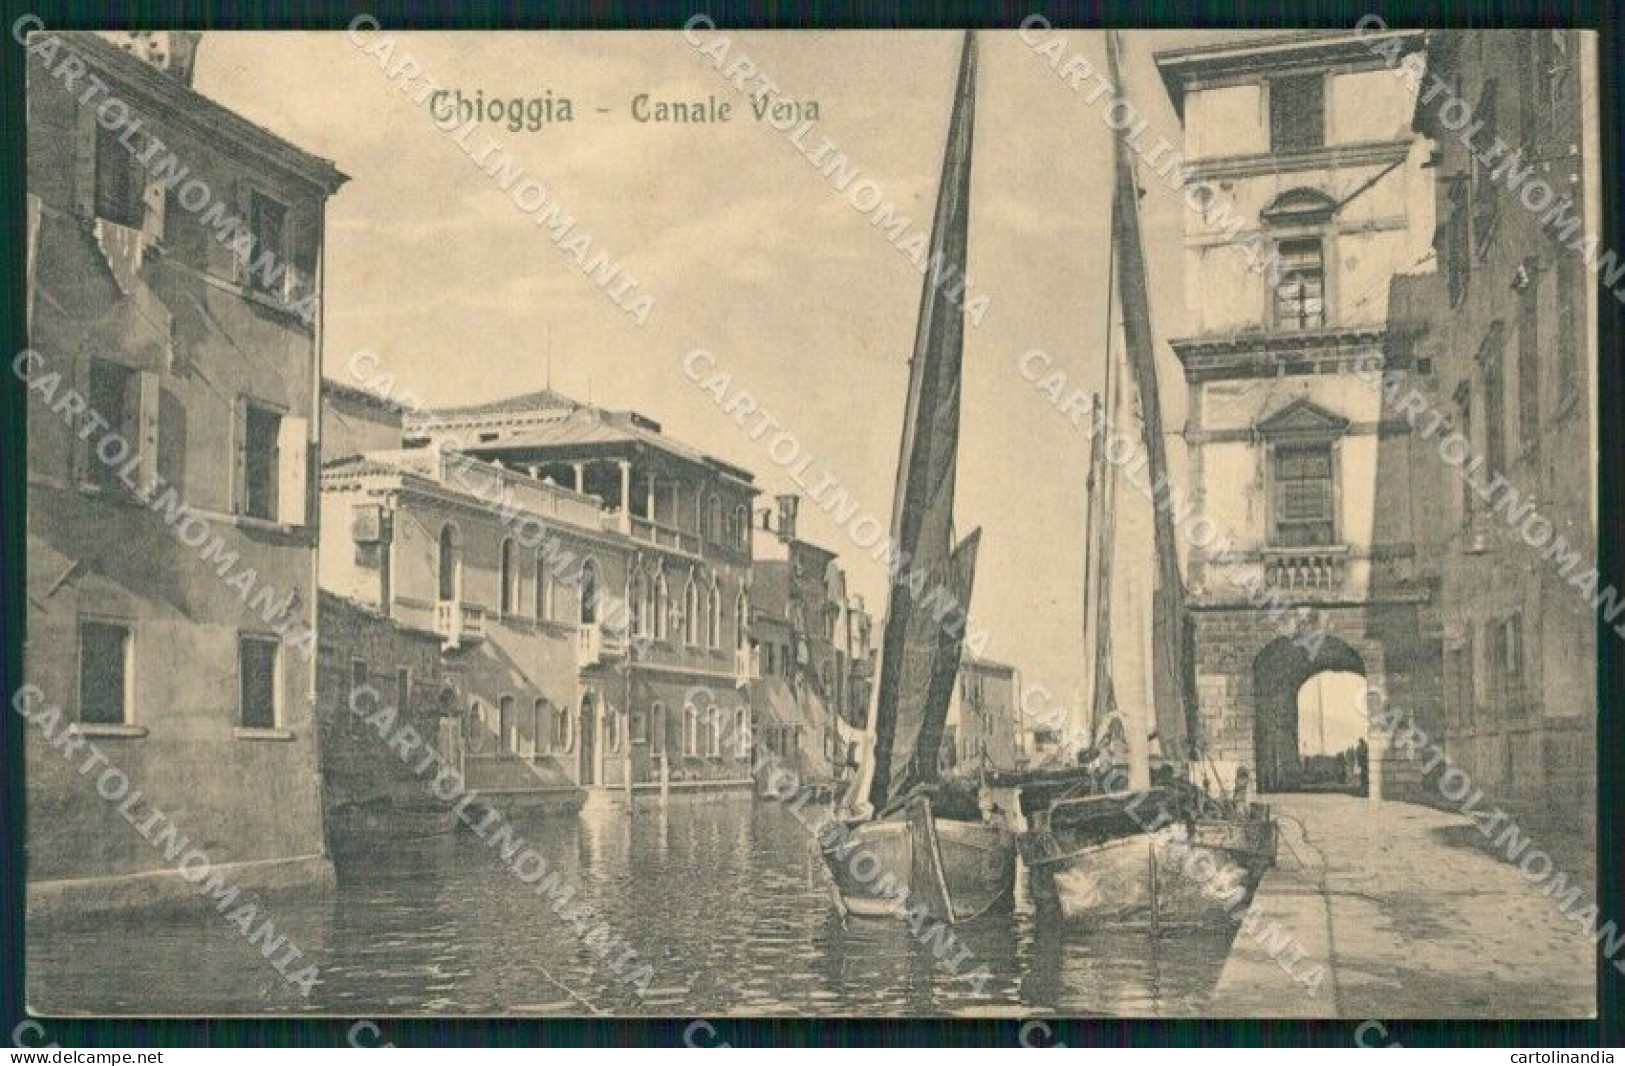 Venezia Chioggia Canale Vena Barca Cartolina QT4020 - Venezia (Venice)